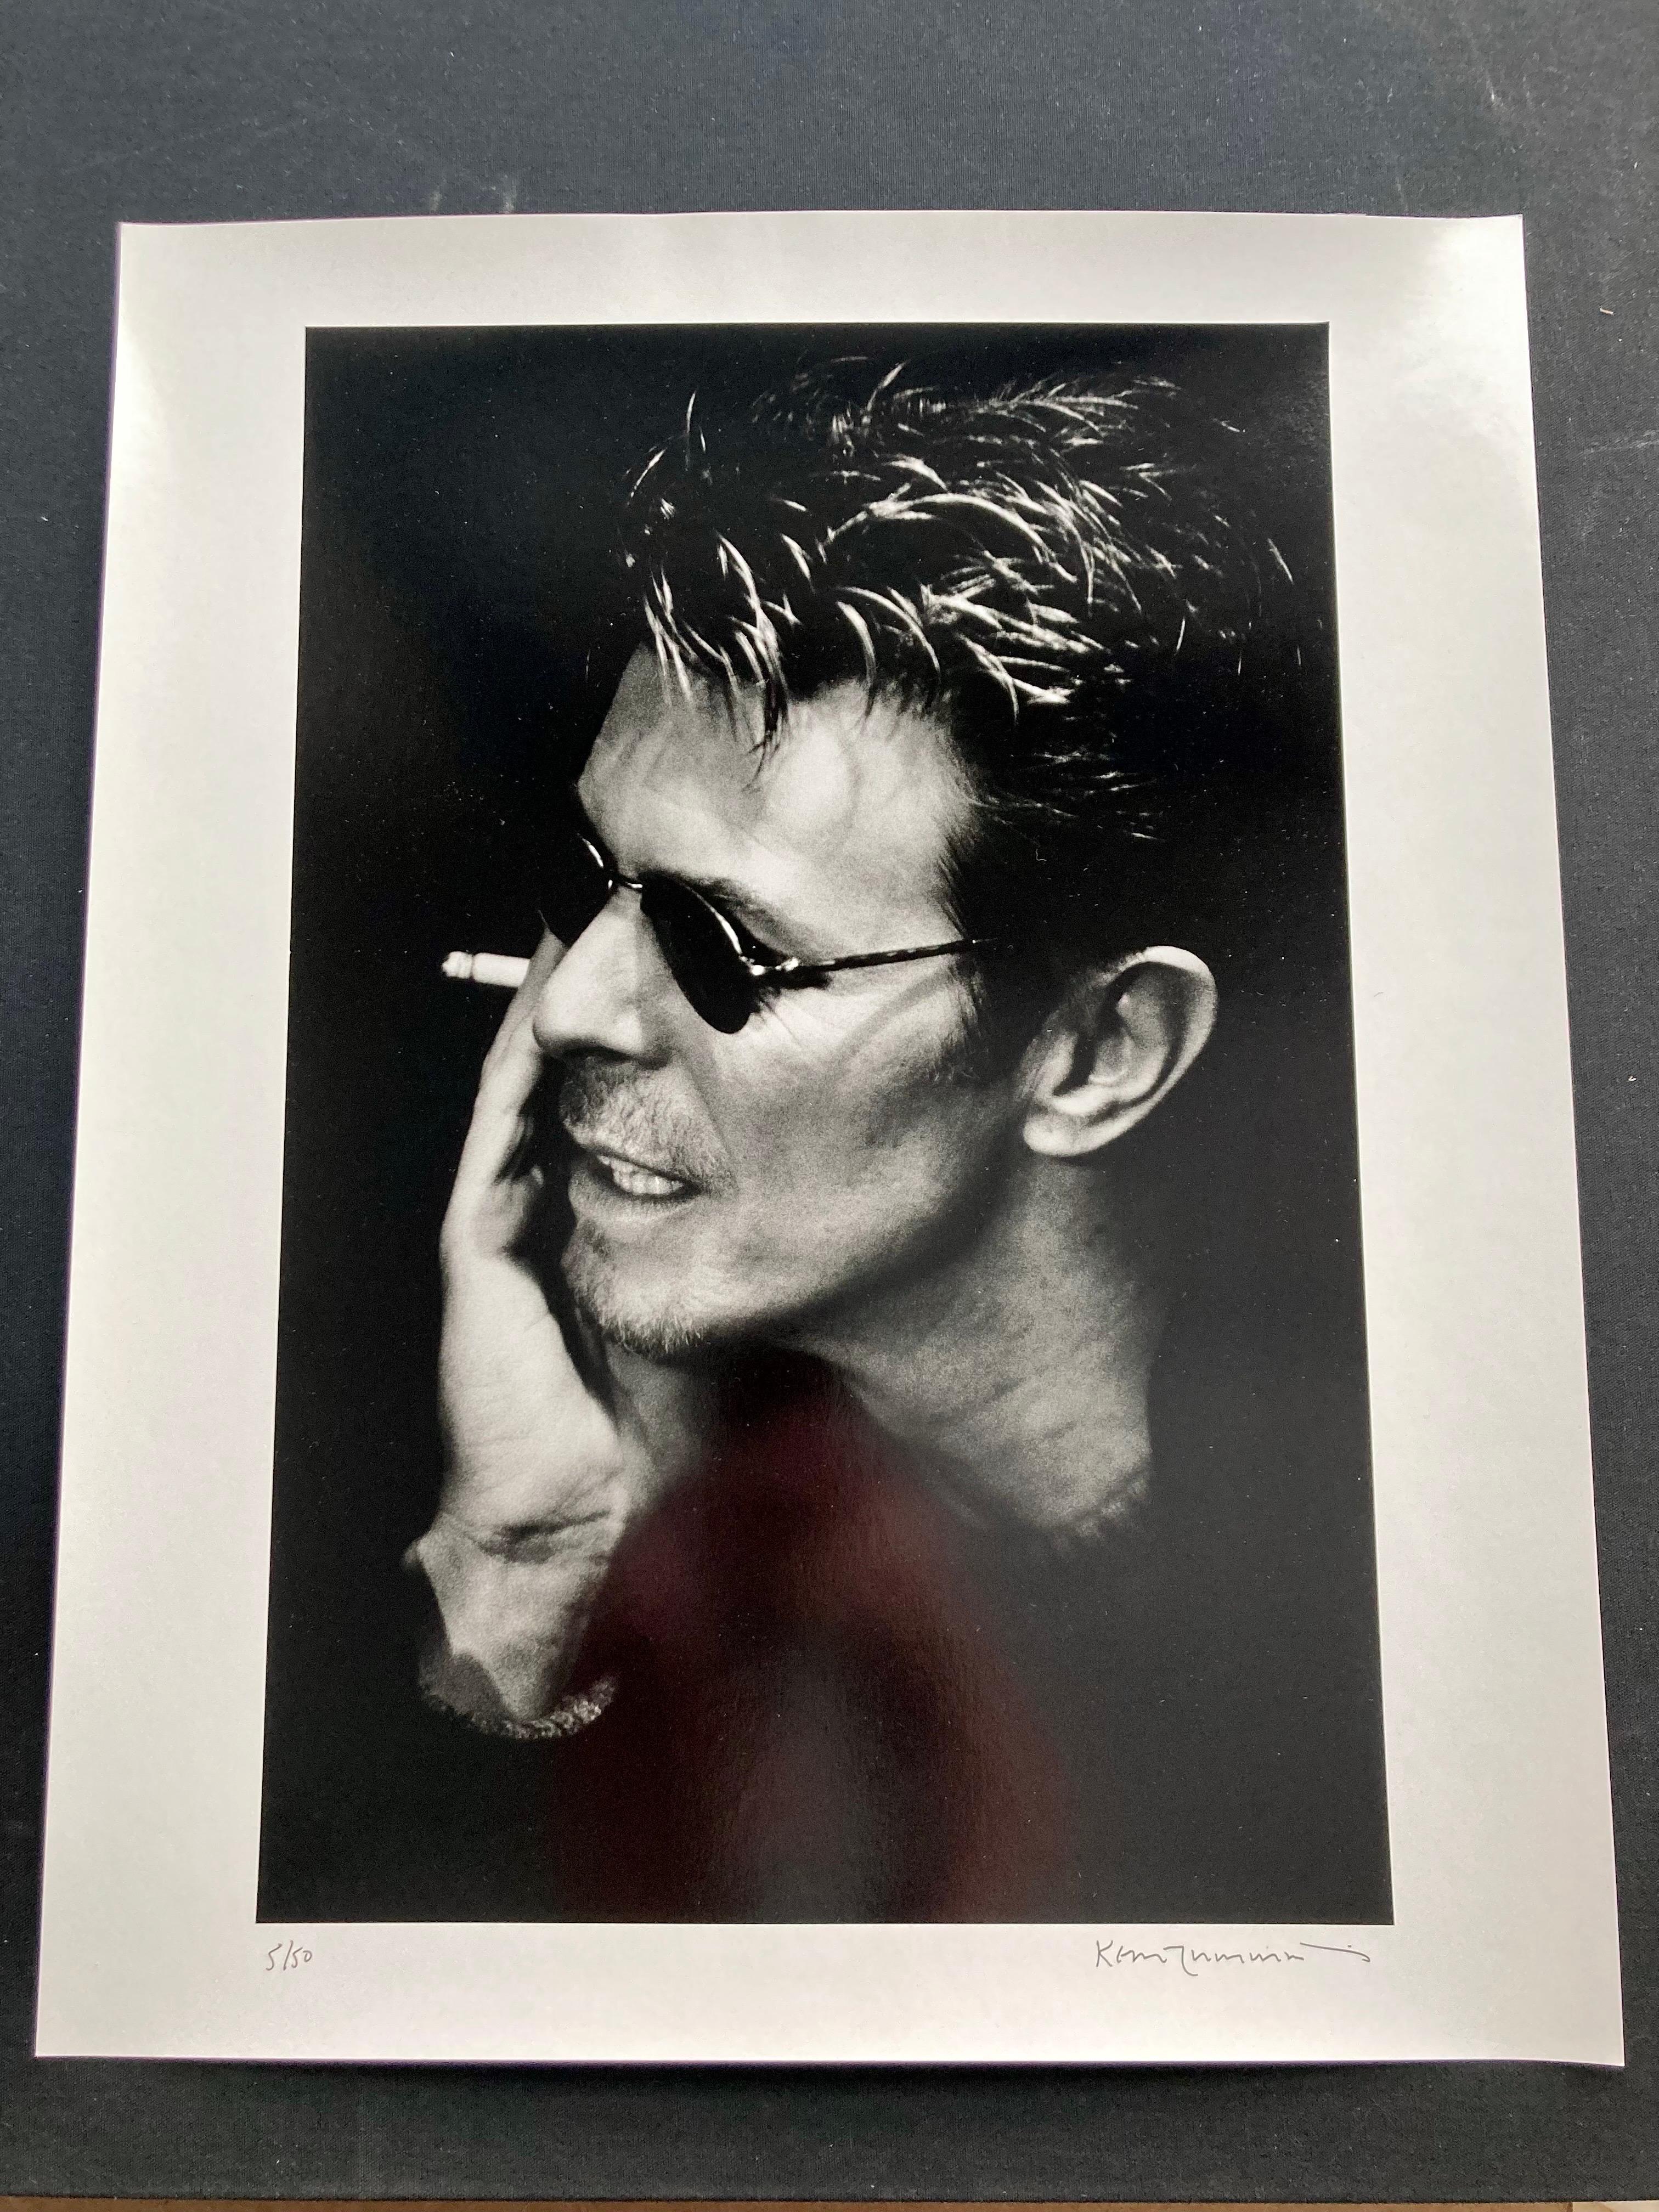 Signierter Silbergelatineabzug in limitierter Auflage (16x20 Zoll) von David Bowie, mit Sonnenbrille und Zigarette, von Kevin Cummins, aufgenommen im November 1995

Auflage Nummer 5/50, signiert und nummeriert von Kevin Cummins.

Dieser David